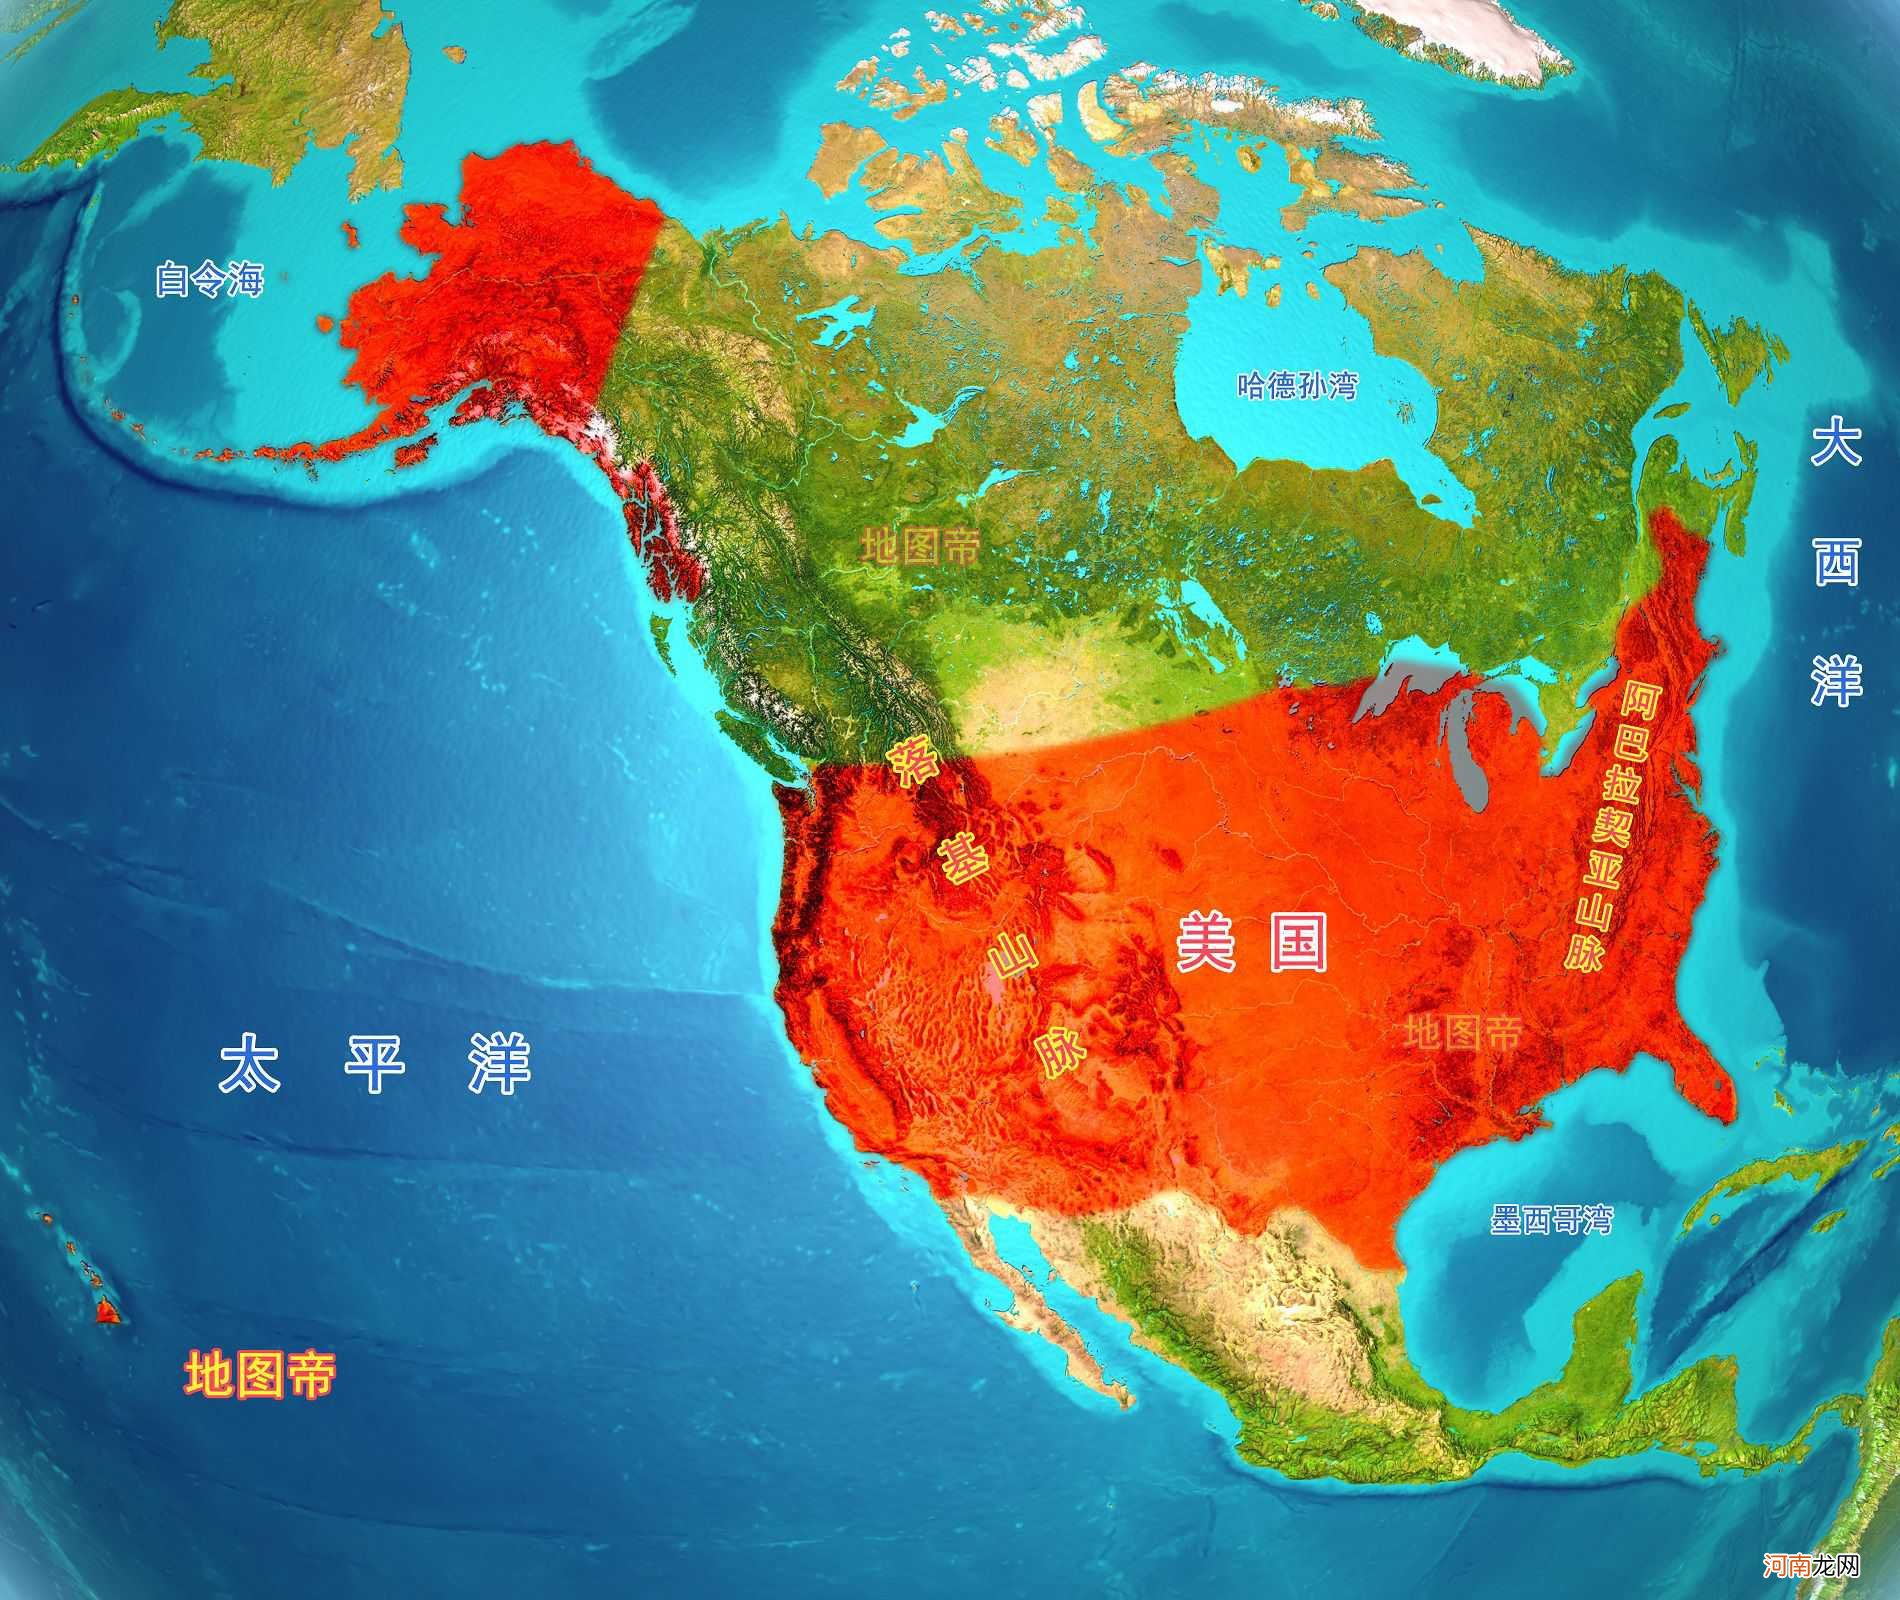 1861年，是中国与美国历史的拐点吗？